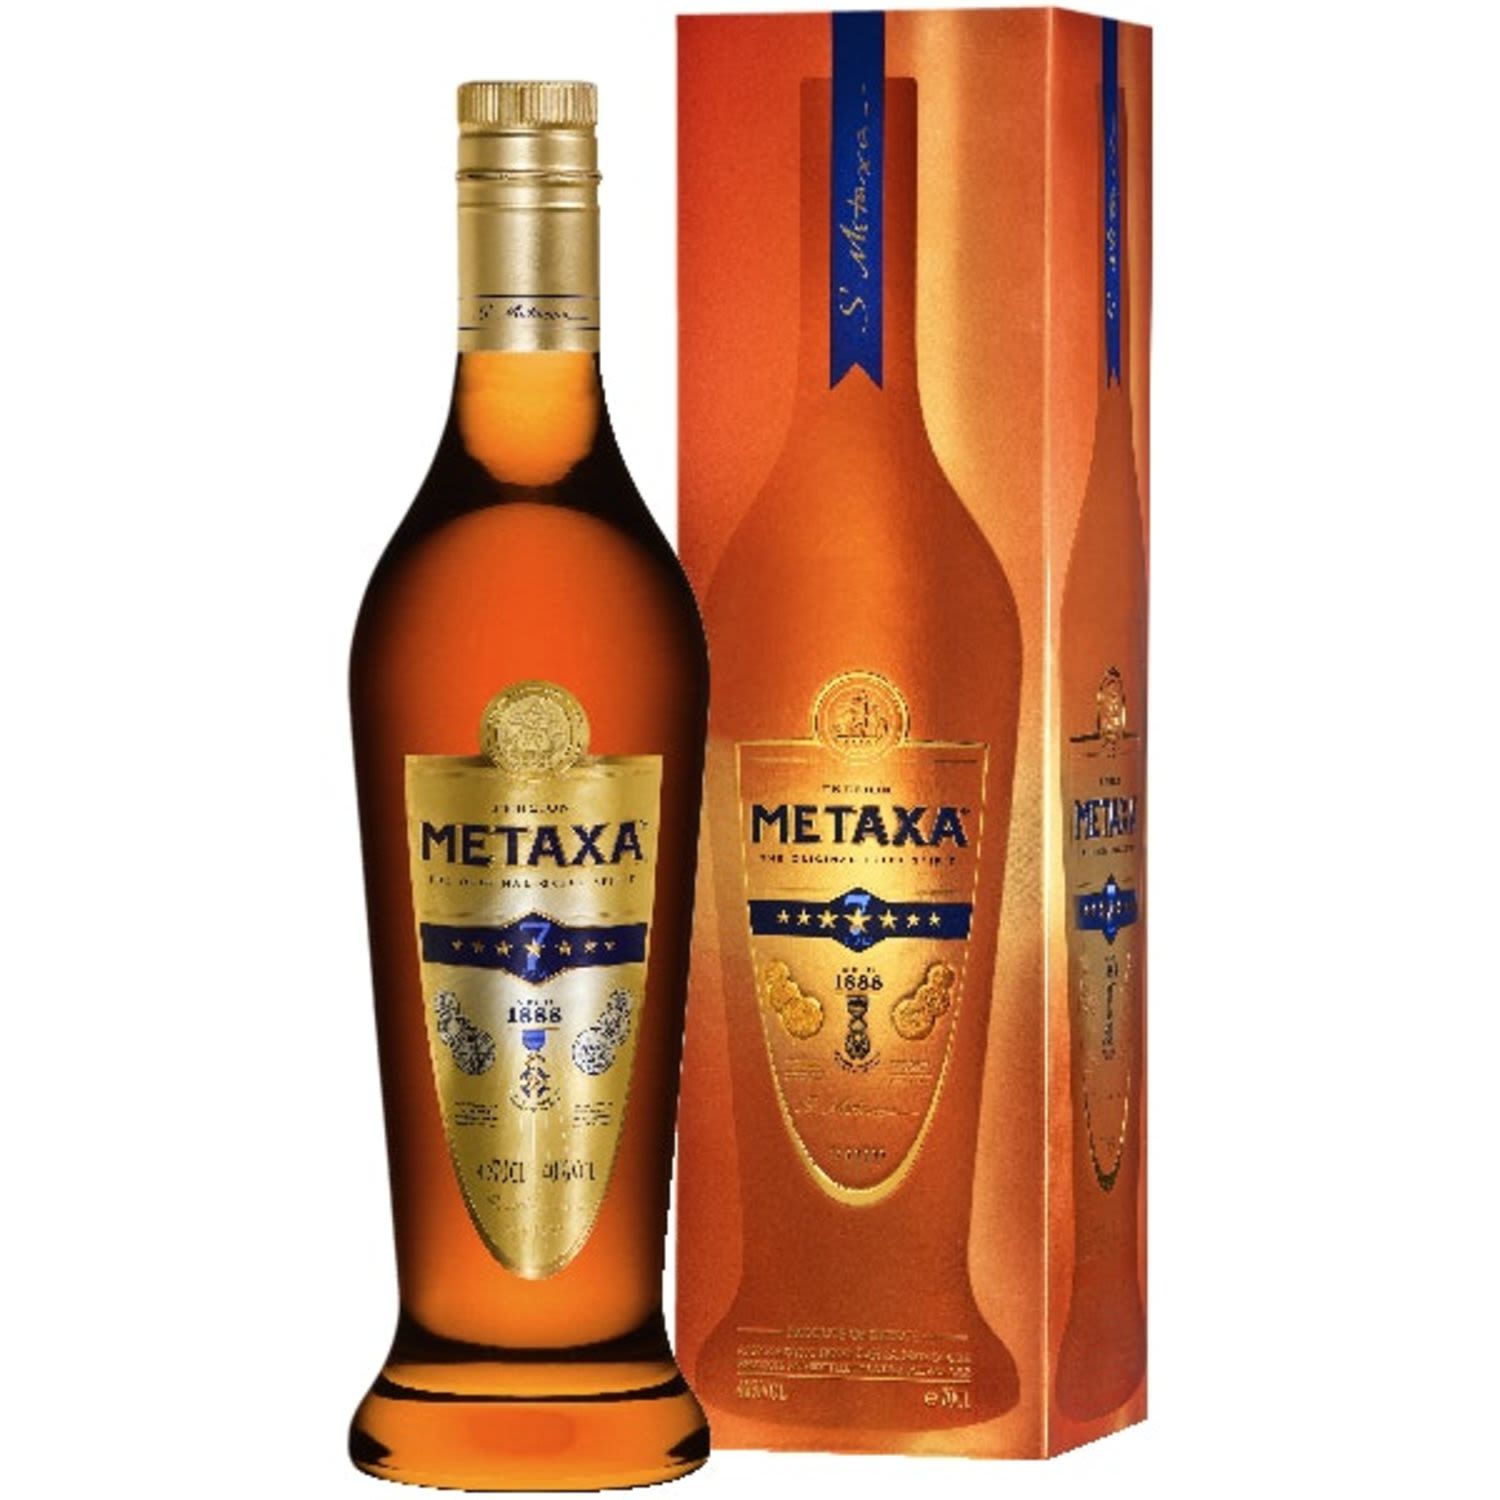 Metaxa 7 Star 700mL Bottle